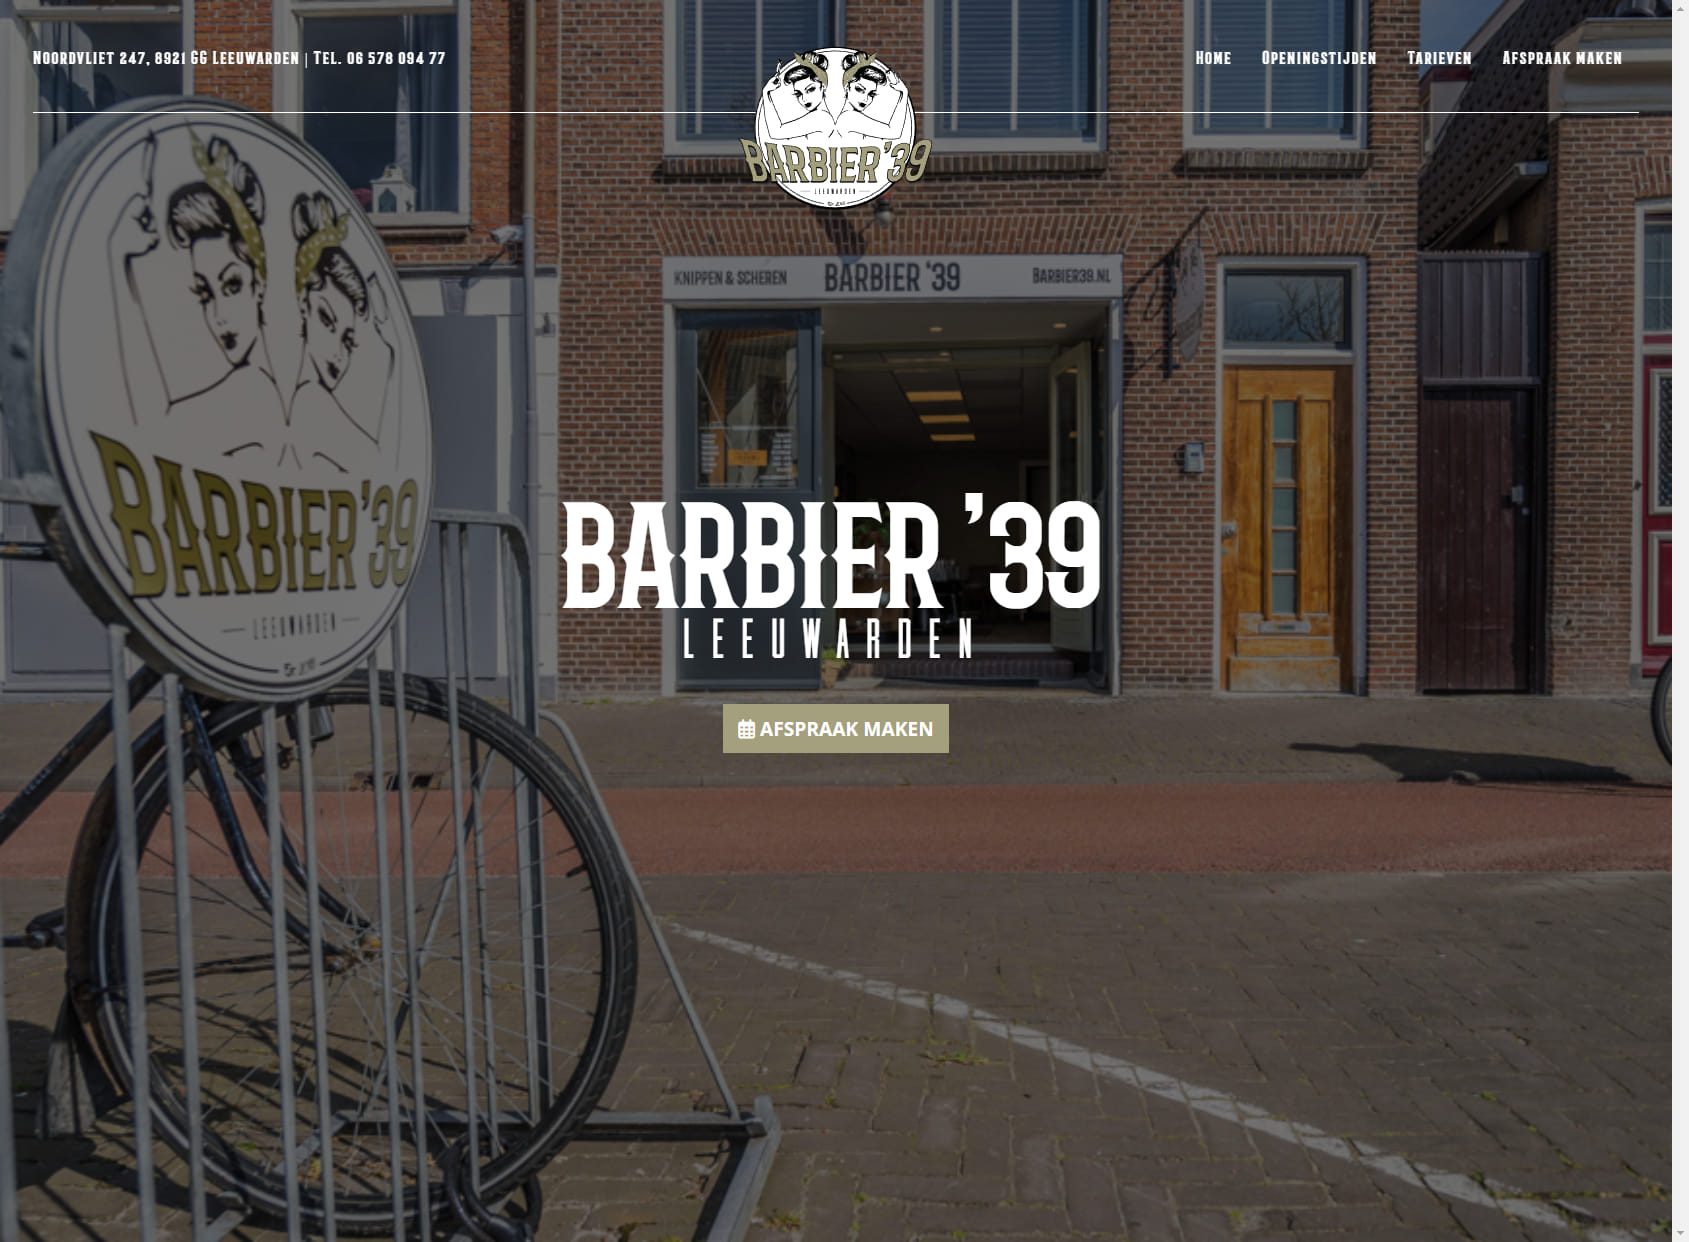 Barbier ‘39